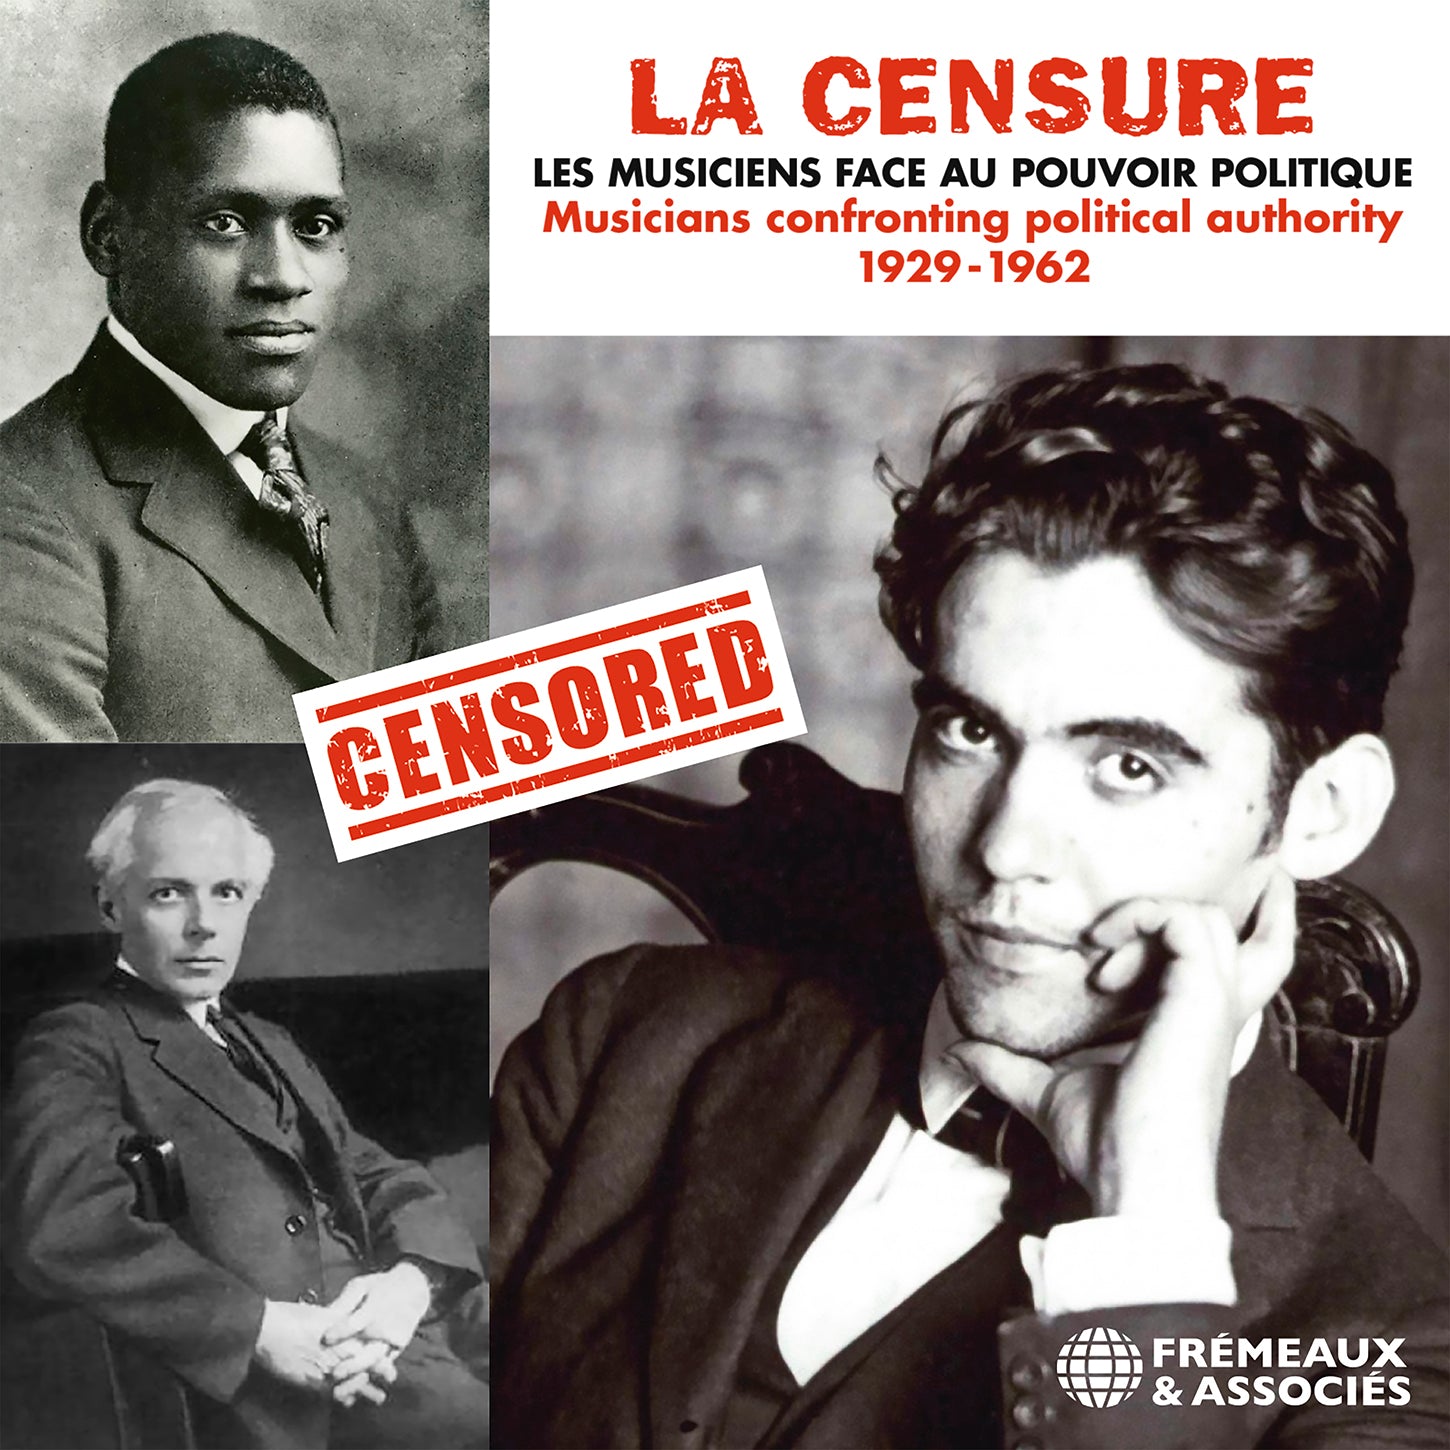 La Censure: Musicians Confront Political Authority, 1929-1962